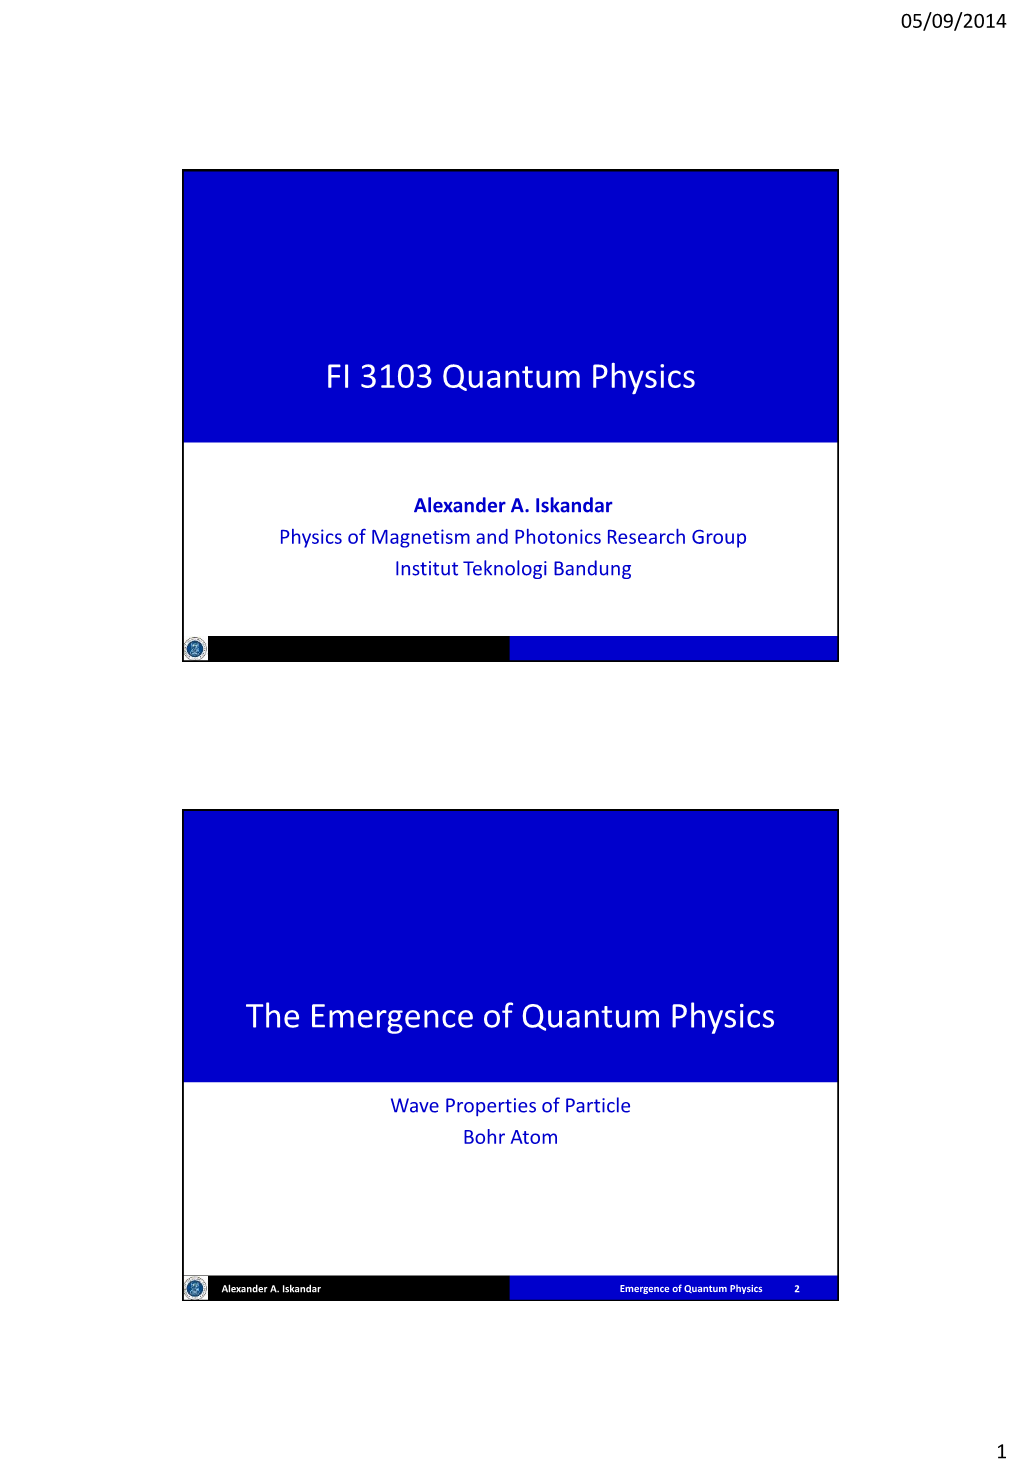 FI 3103 Quantum Physics the Emergence of Quantum Physics